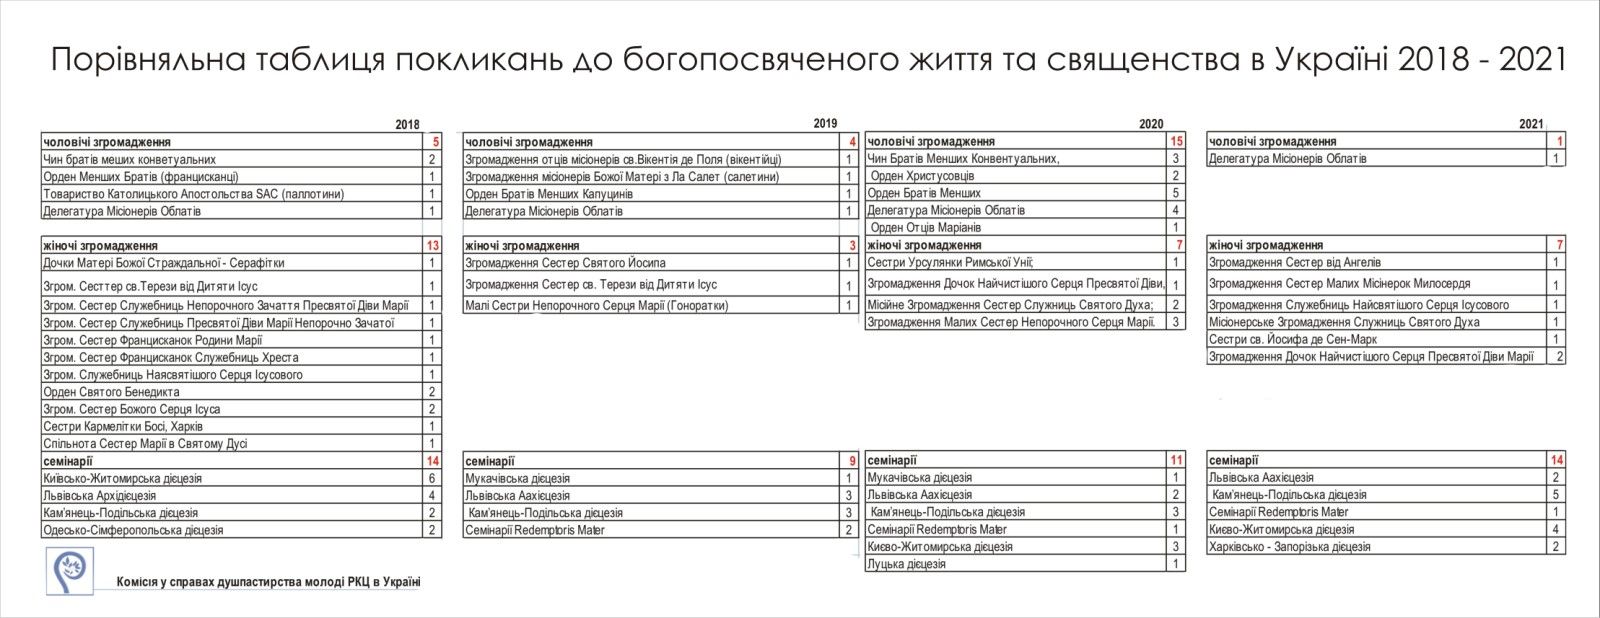 РКЦ в Україні оприлюднила статистику щодо нових покликань 2021 року - фото 83304